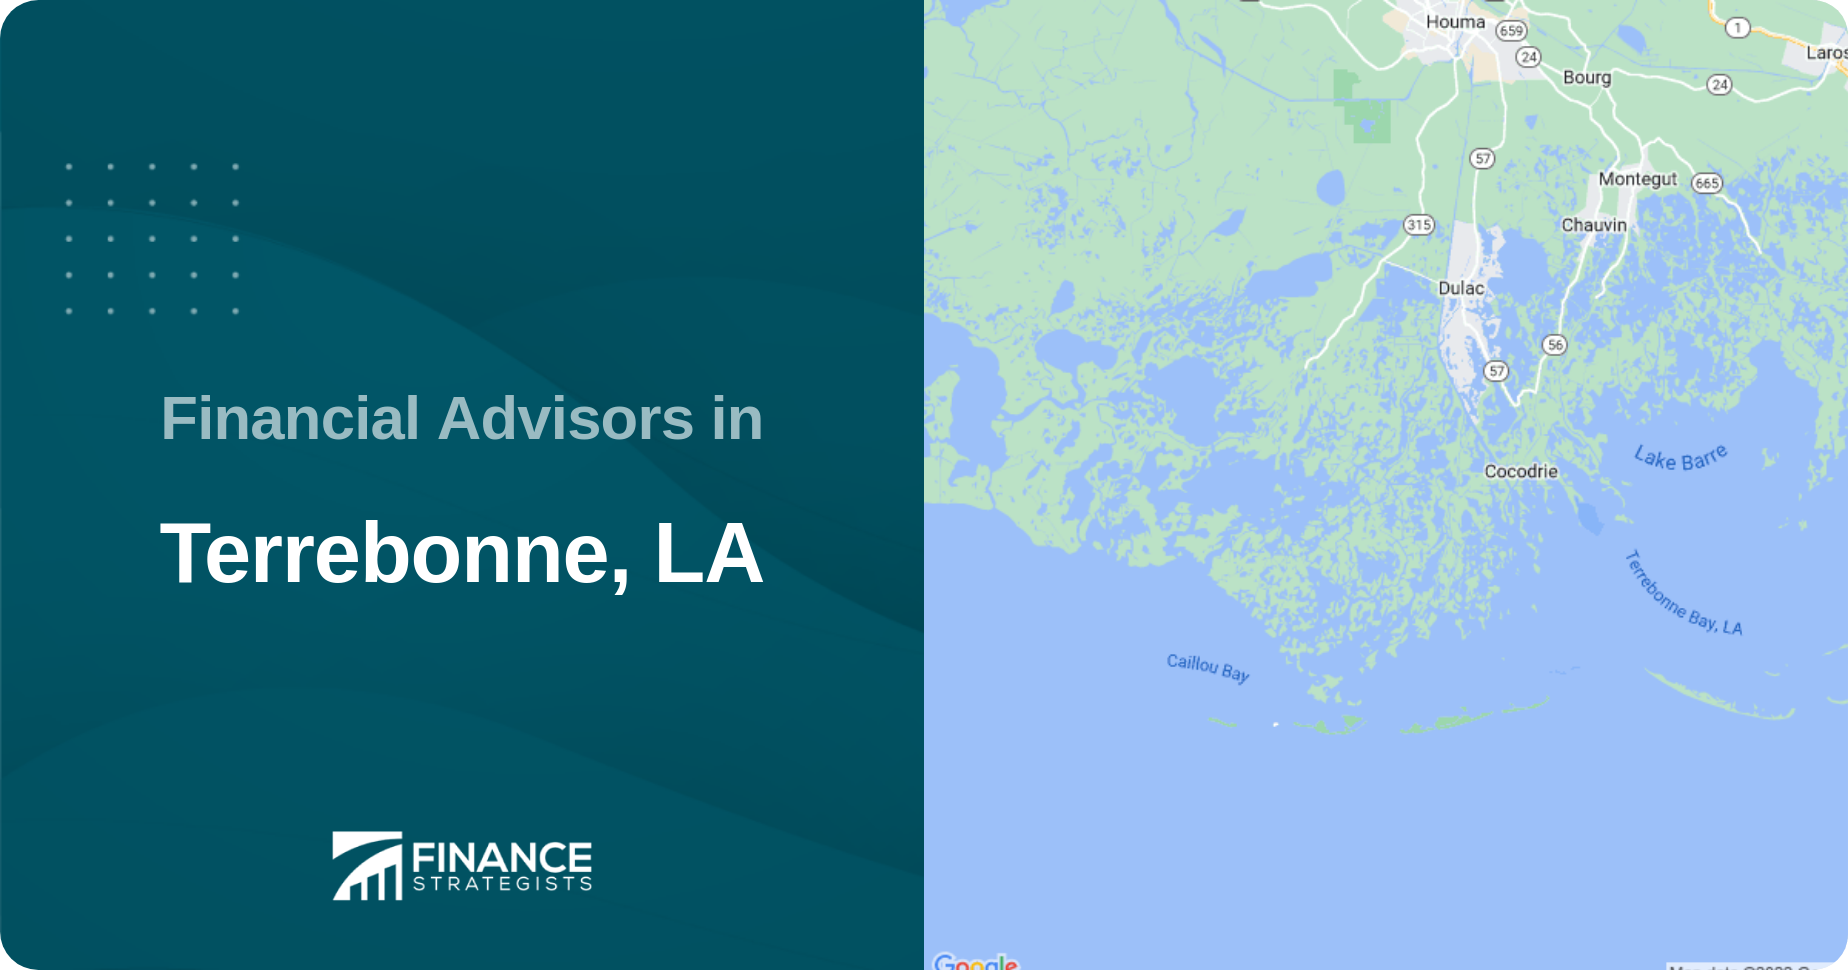 Financial Advisors in Terrebonne, LA